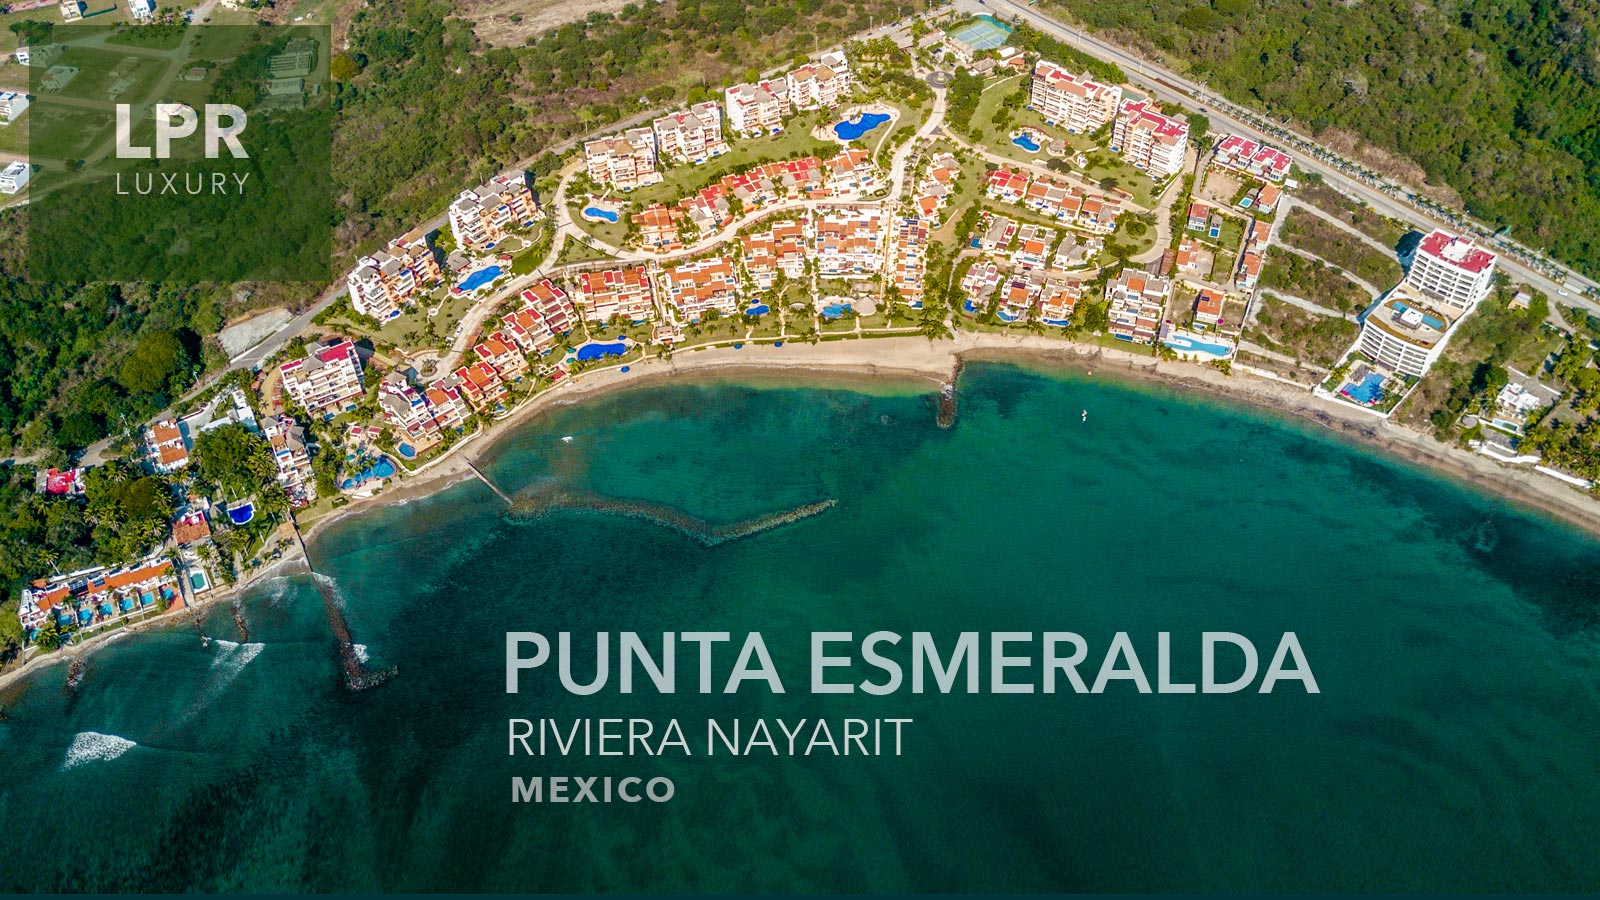 Punta Esmeralda - Punta de Mita Luxury beachfront vacation rental villas for sale in La Cruz de Huanacaxtle, Punta de Mita, Riviera Nayarit, North shore Puerto Vallarta, Mexico